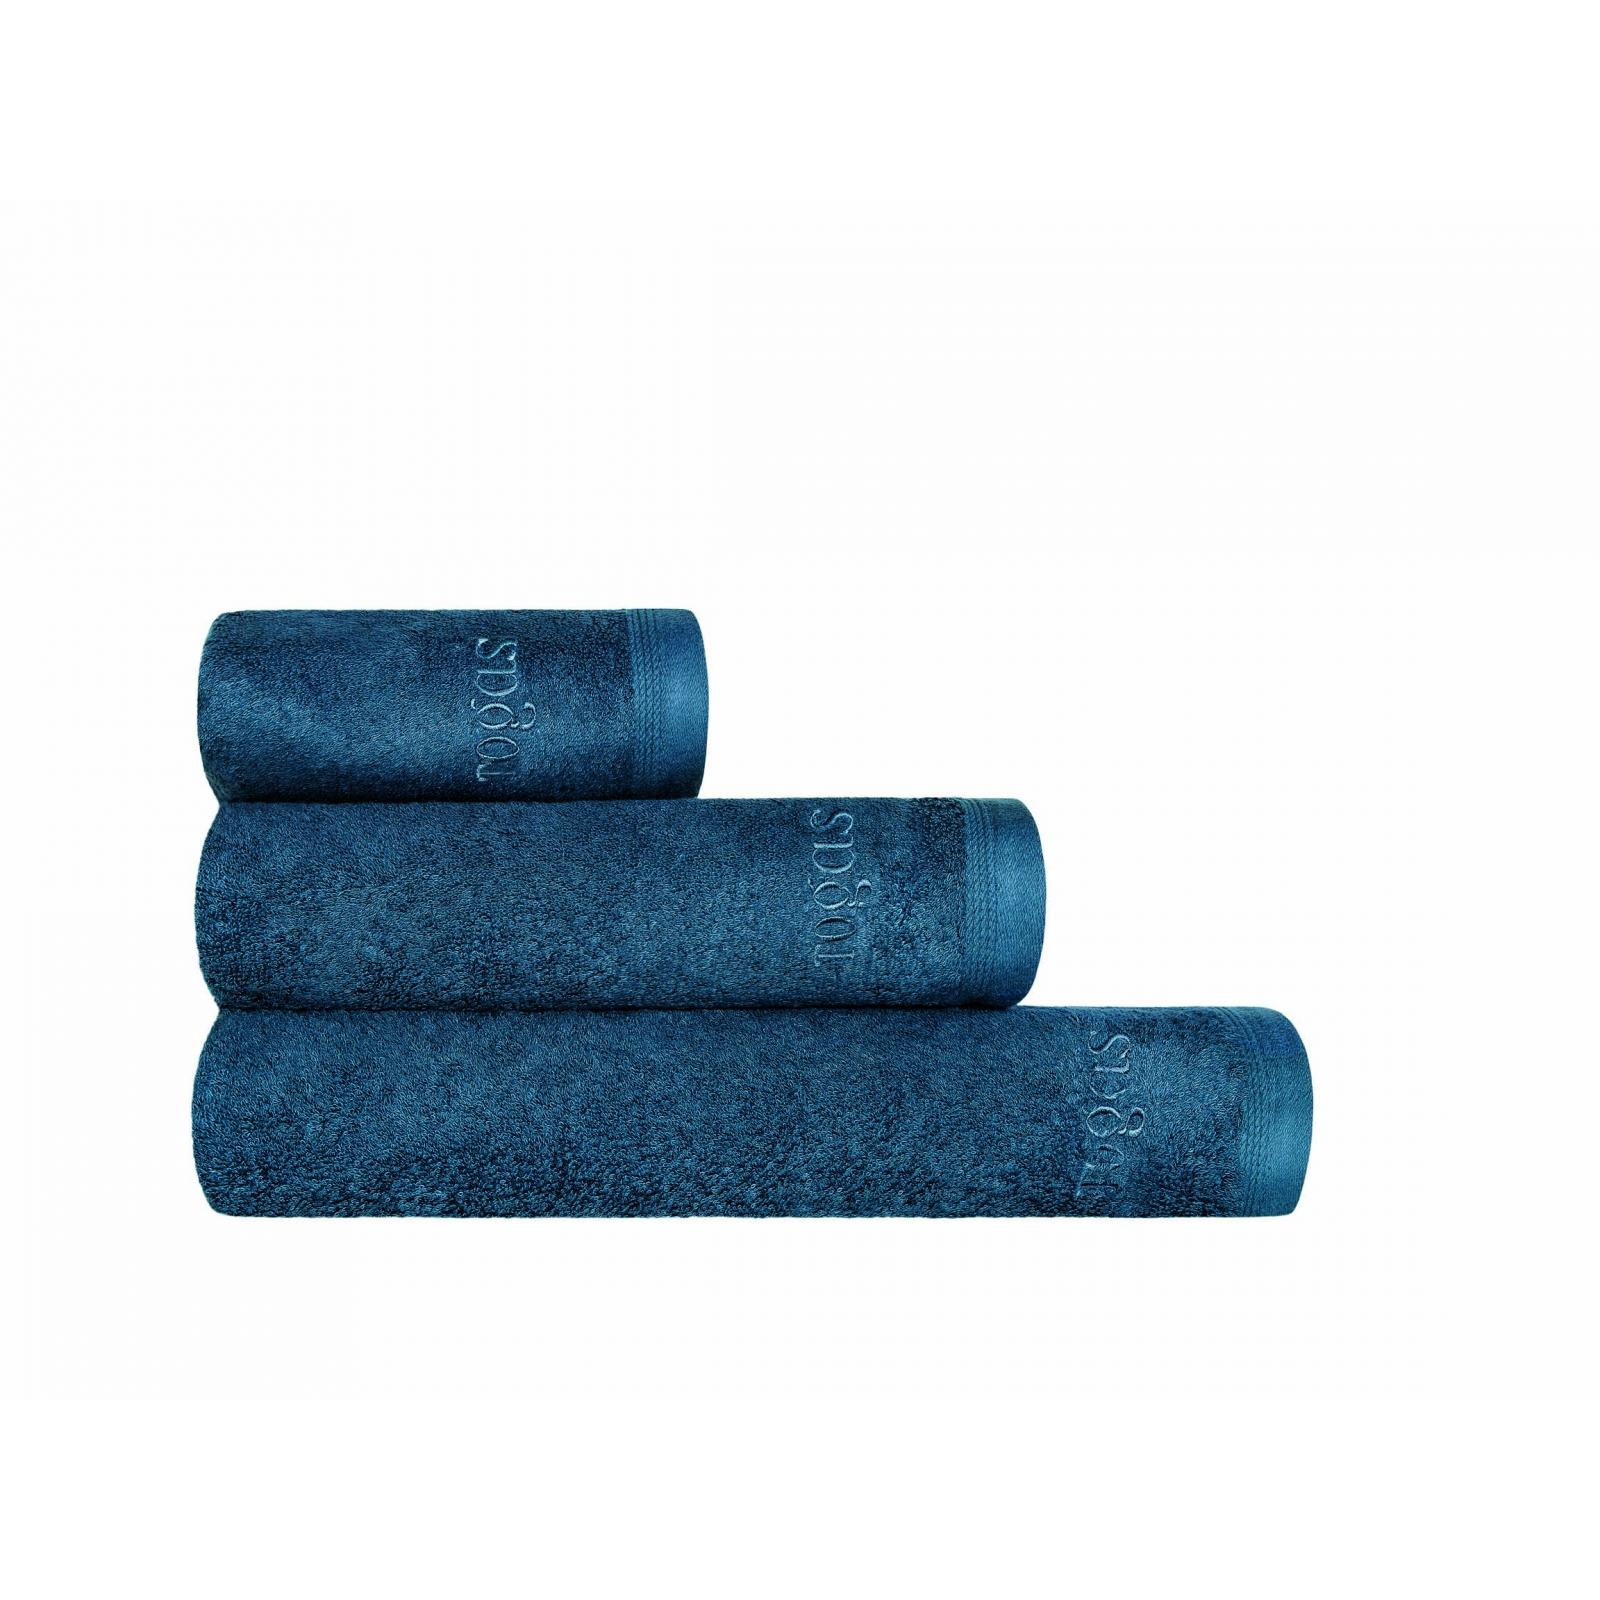 Полотенце Togas Пуатье темно-синее 40х60 см полотенце togas пуатье изумрудное 40х60 см